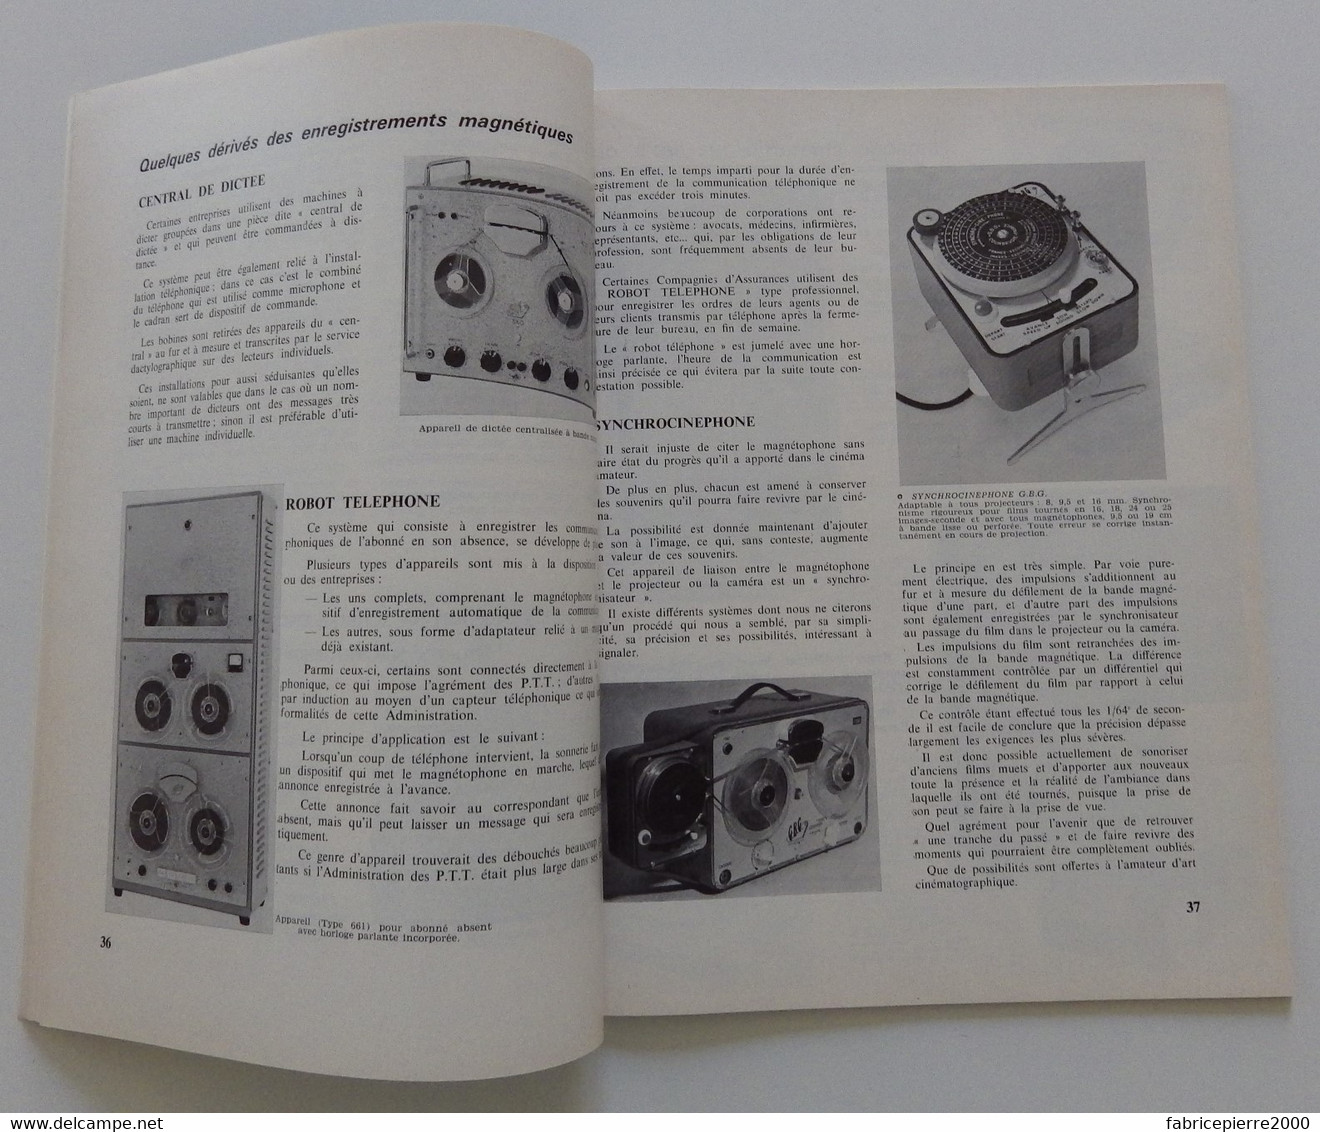 INTERPRODUCTIVITE n° 100 1964 Les moyens audiovisuels au service de la formation et de l'information EXCELLENT ETAT